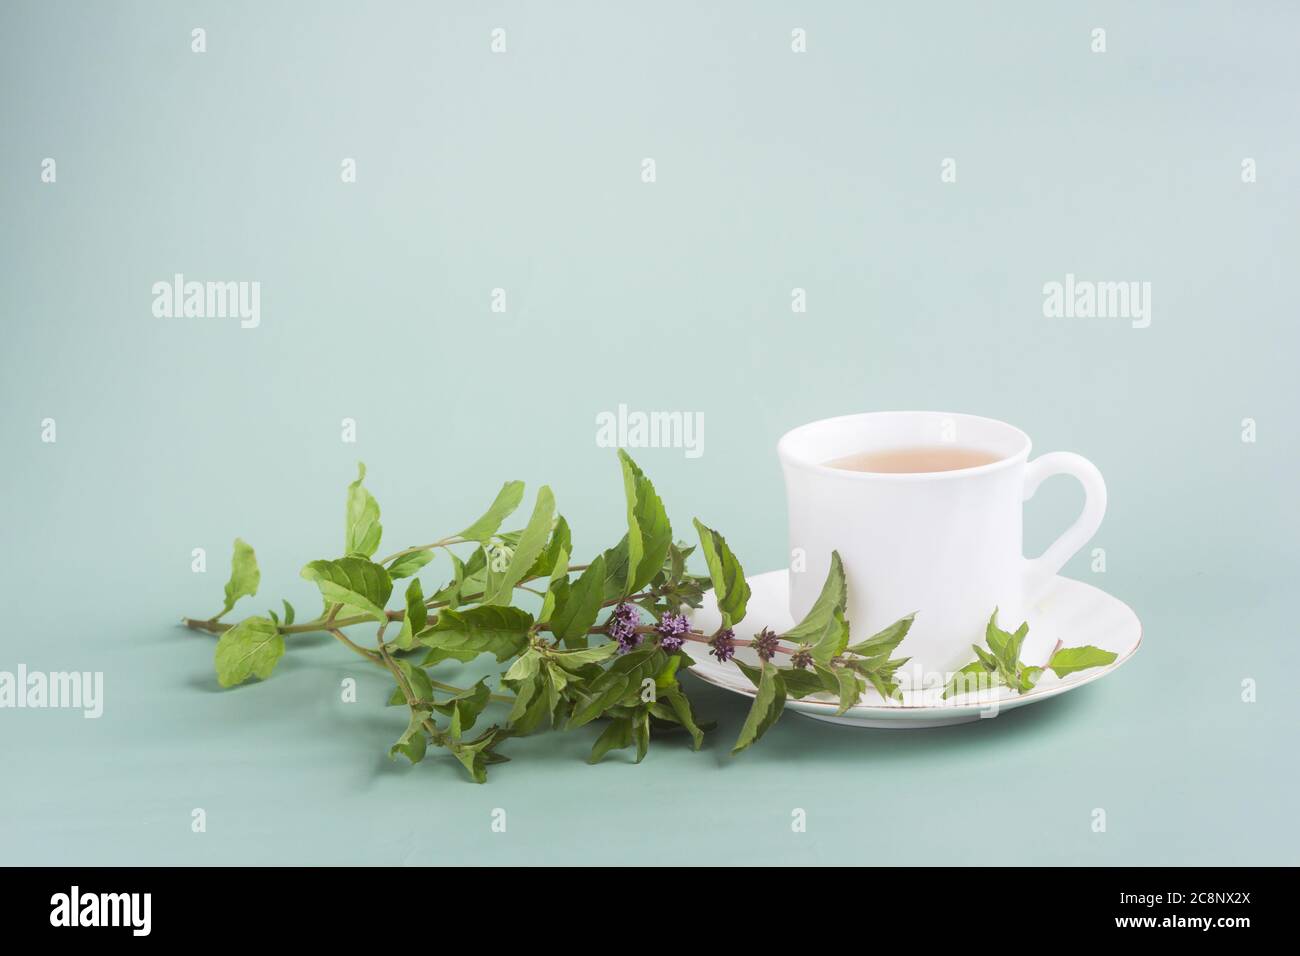 Una tazza bianca di tè con un trivello con menta si erge sul tavolo su sfondo grigio-verde, il tè del mattino Foto Stock